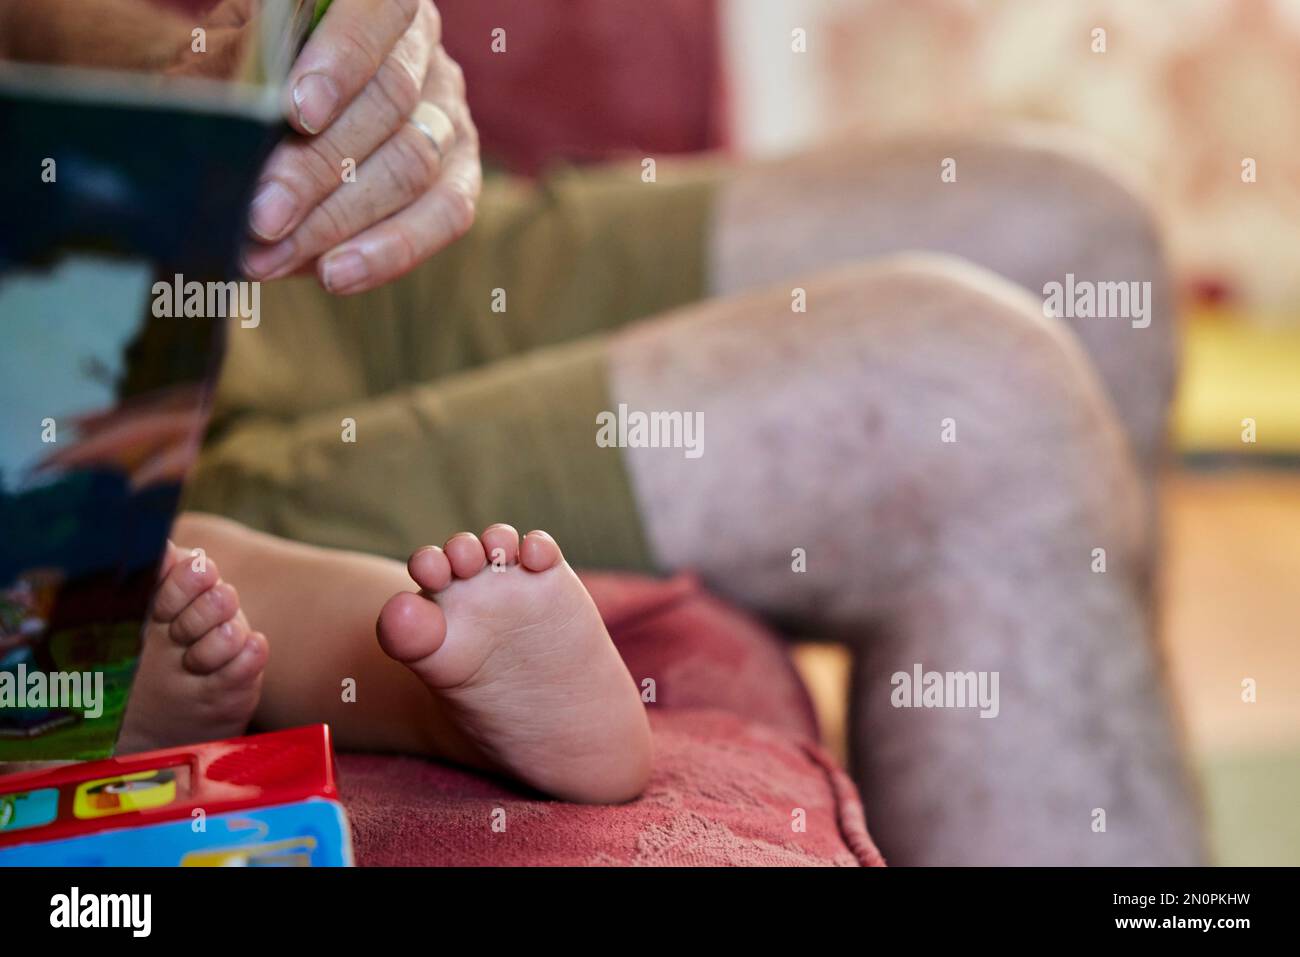 Gros plan du grand-père lisant le tout-petit, vue des pieds nus de l'enfant et des genoux du grand-père. Banque D'Images